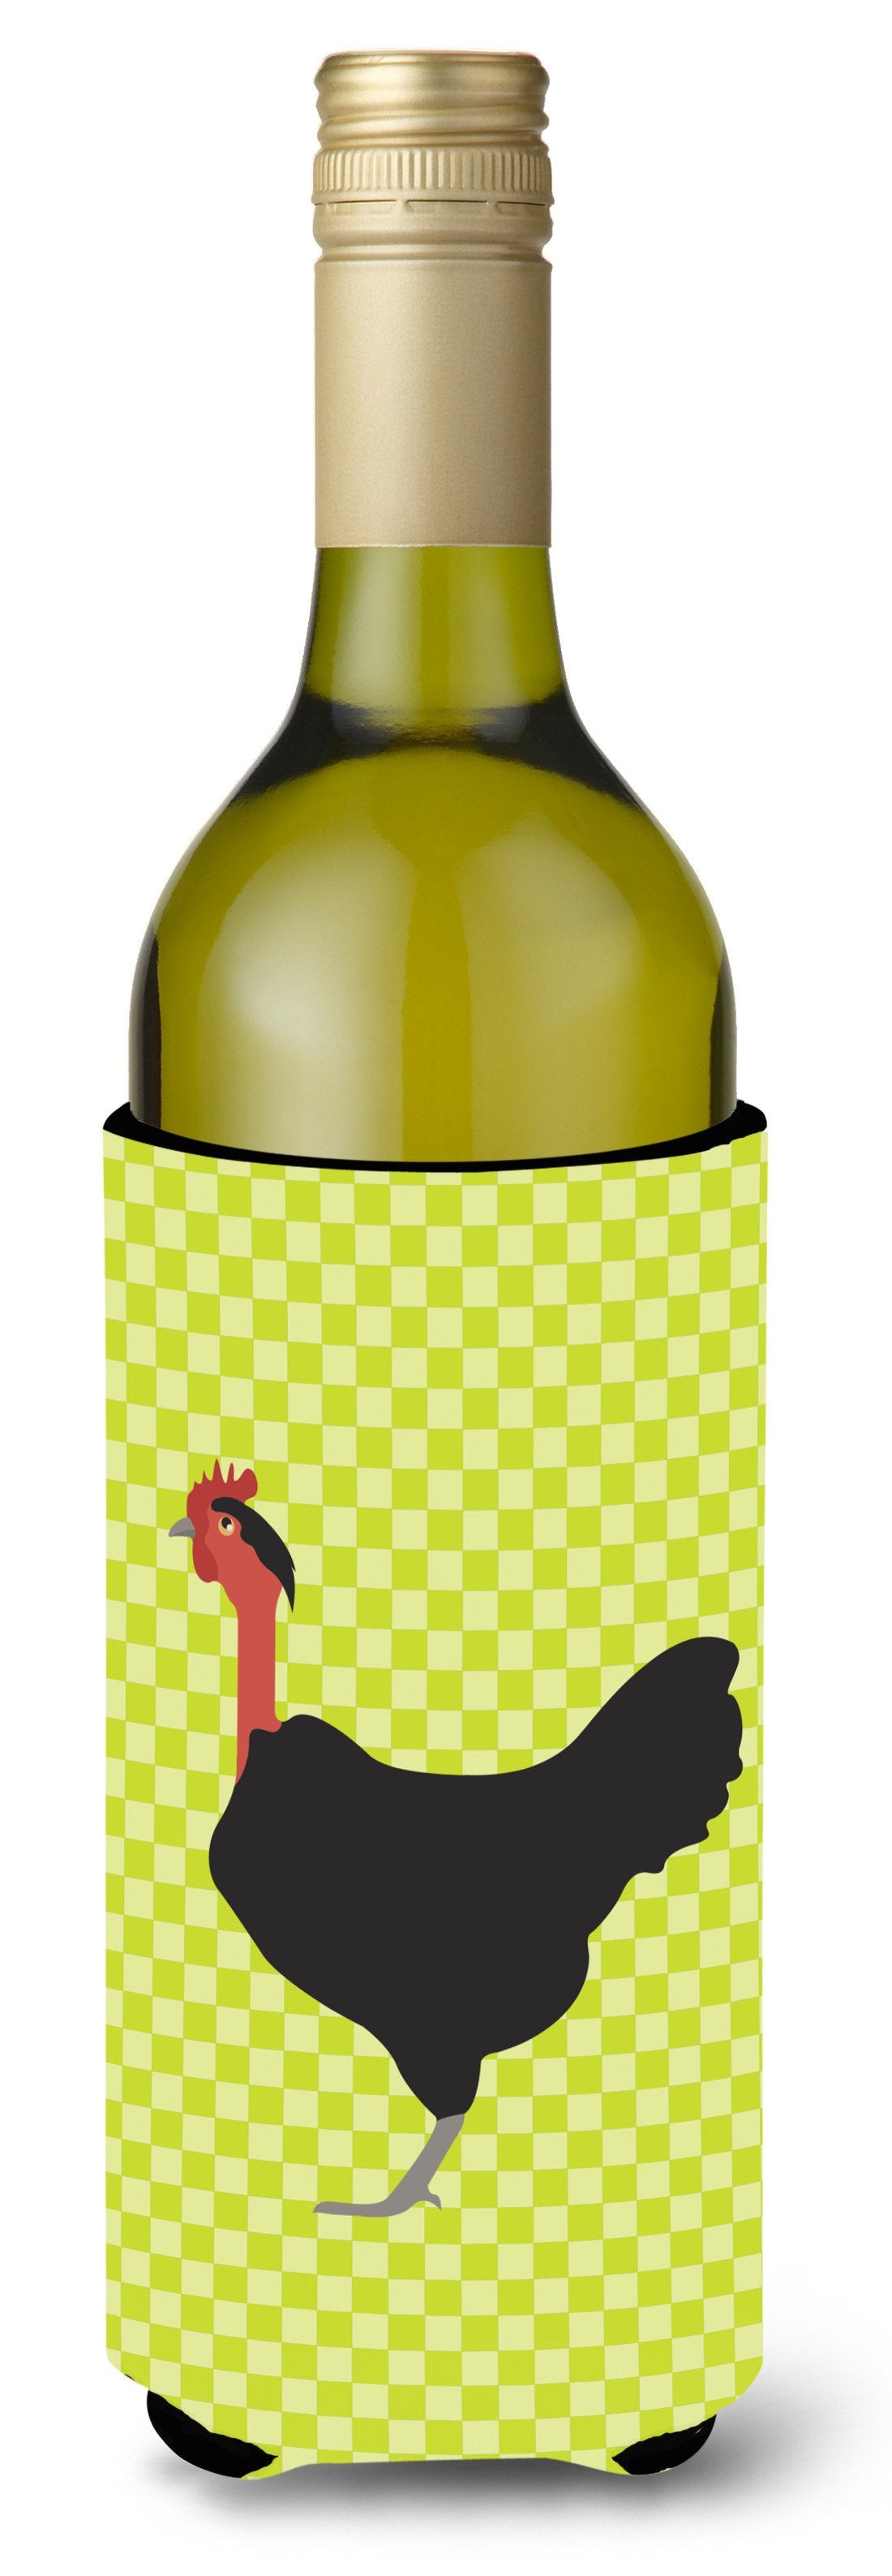 Naked Neck Chicken Green Wine Bottle Beverge Insulator Hugger BB7665LITERK by Caroline's Treasures